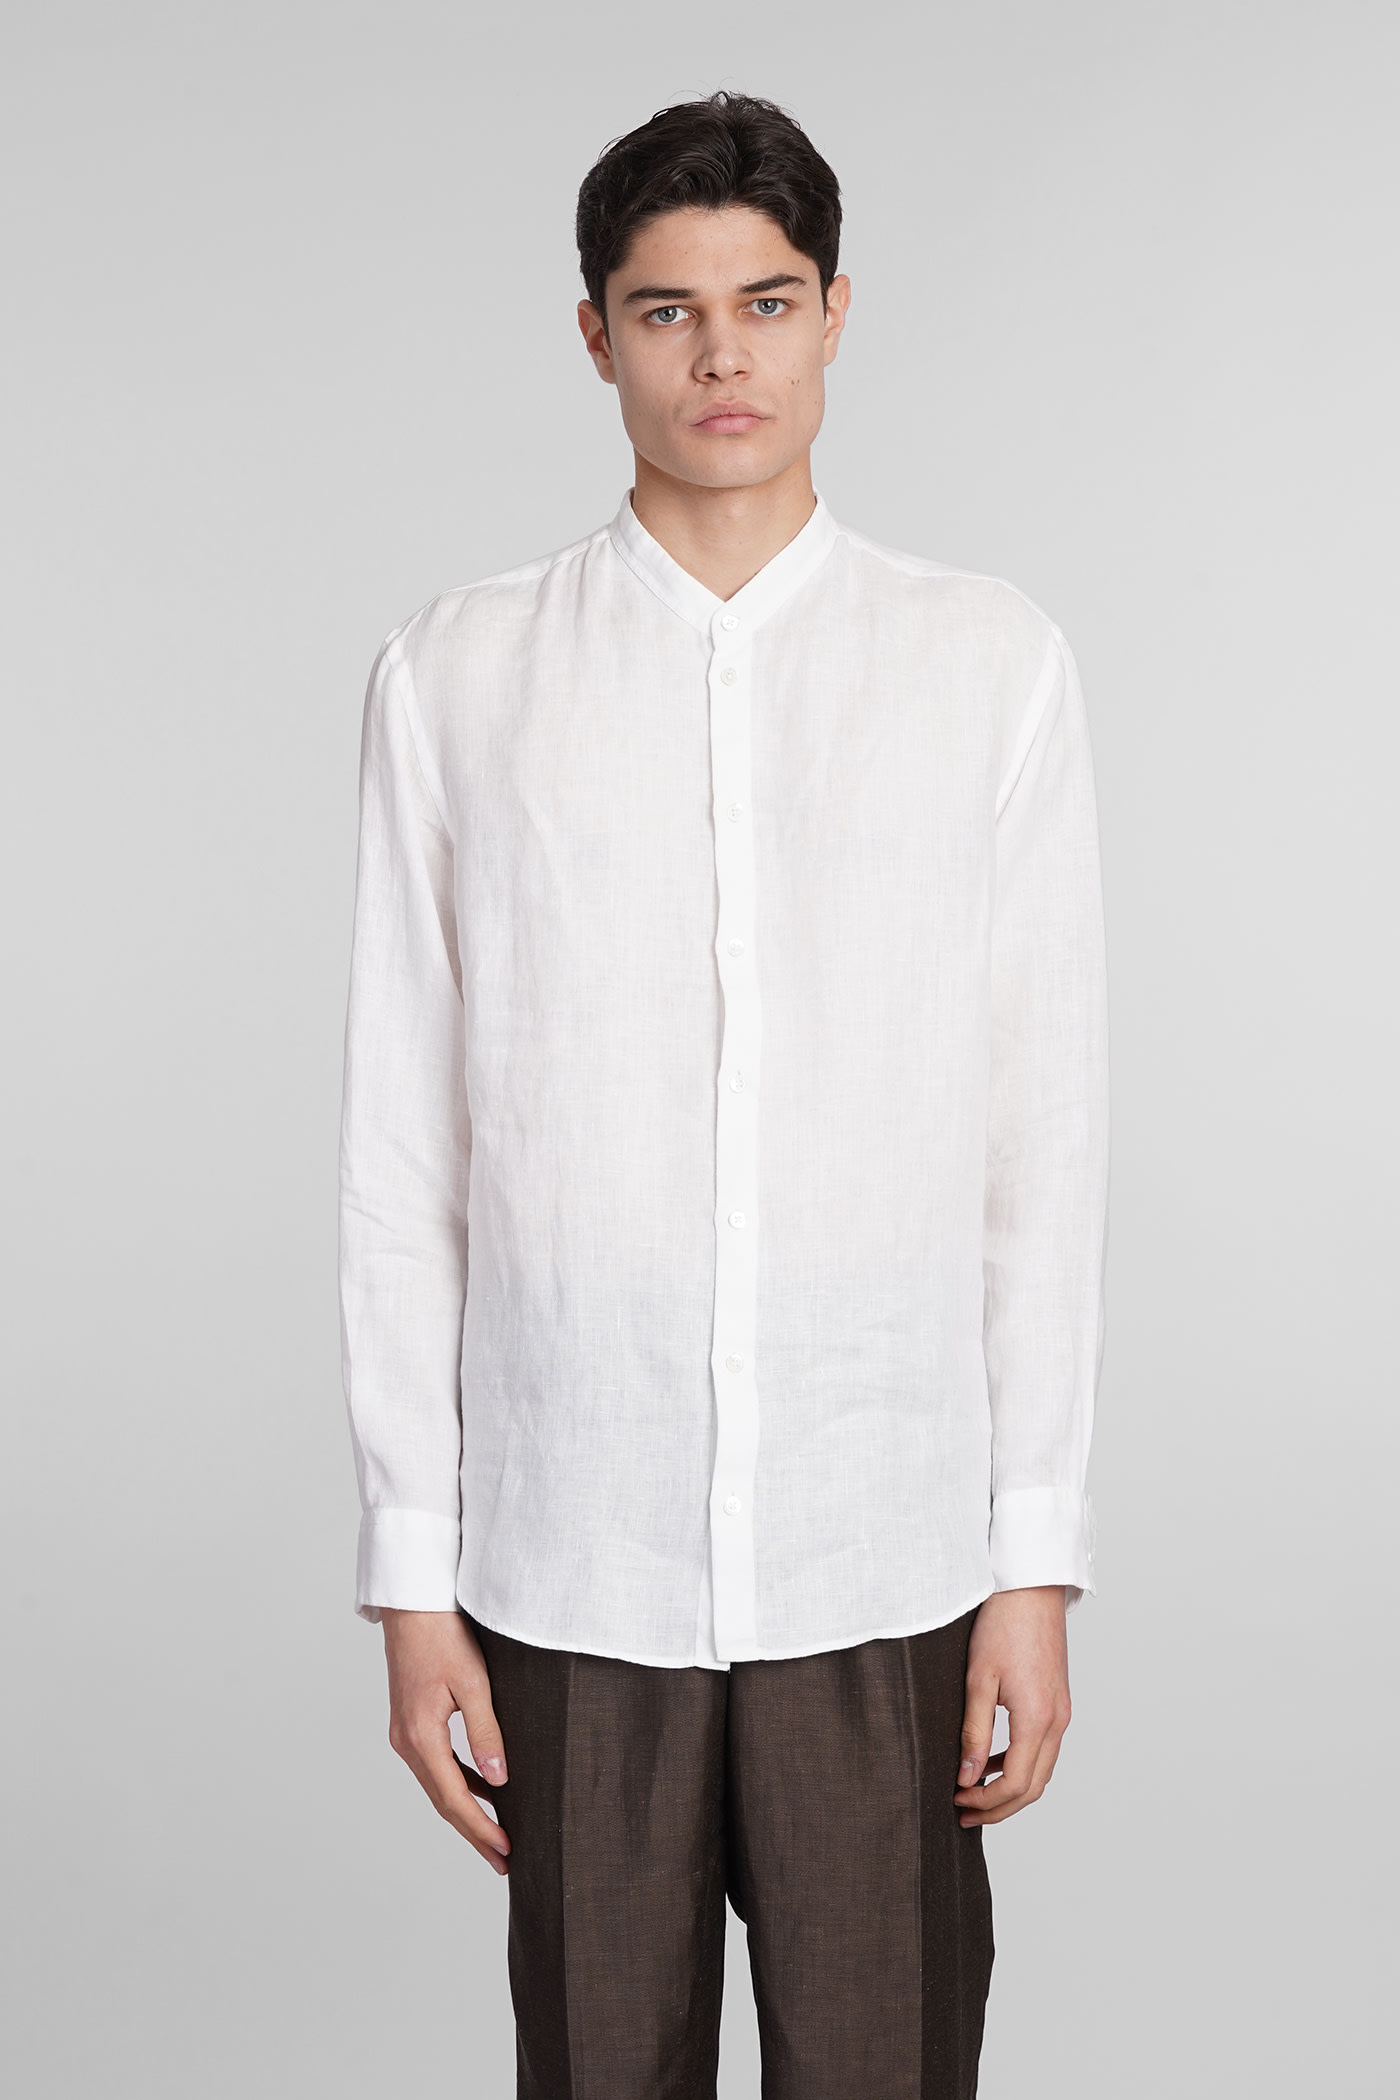 Emporio Armani Shirt In White Linen